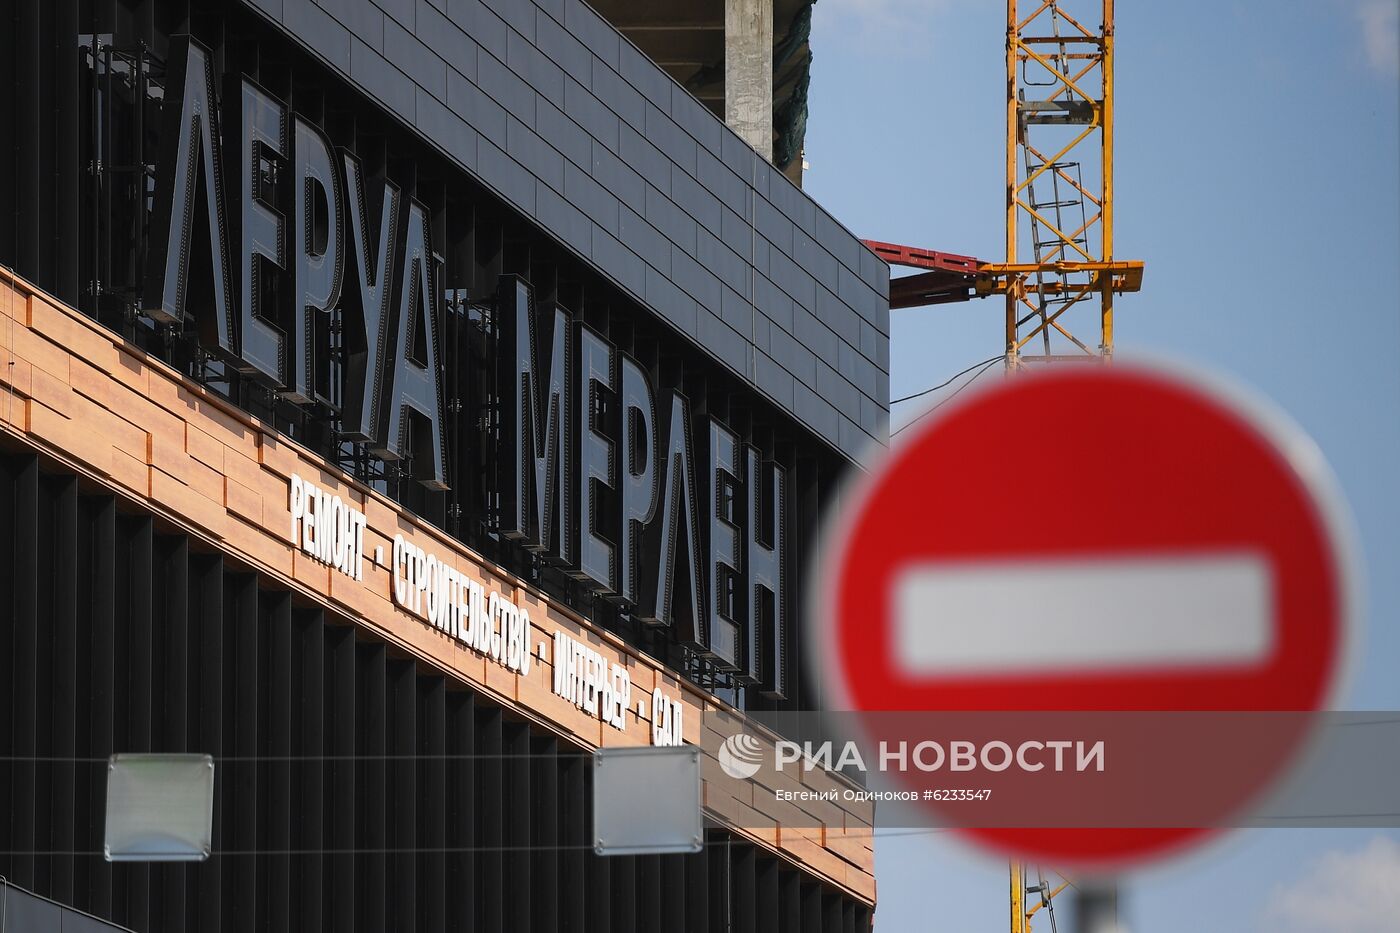 Магазины "Леруа Мерлен" продолжают работать в условиях режима повышенной готовности в Москве